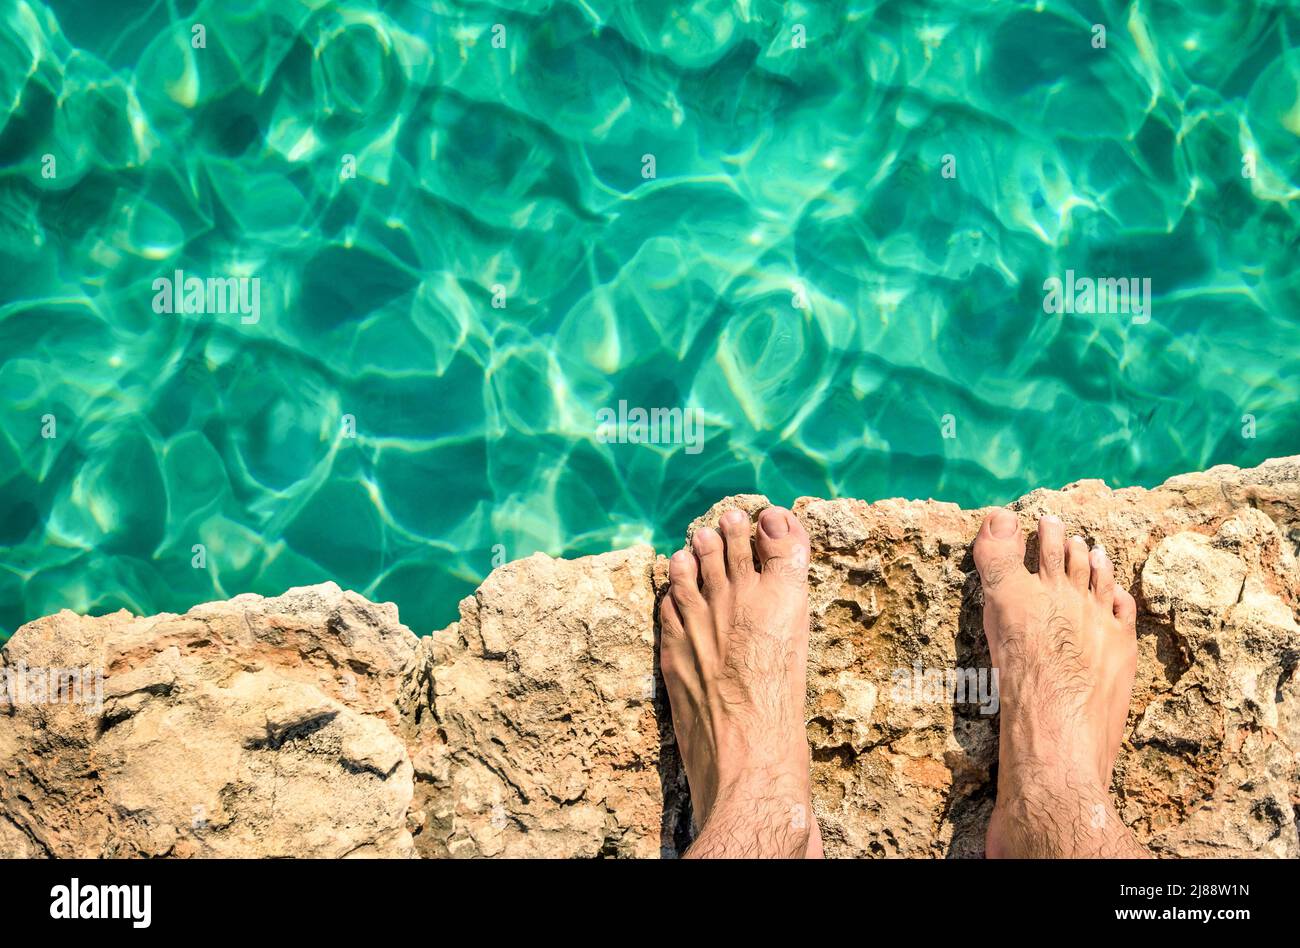 Humano desnudo descalzo en acantilado de roca listo para saltar en el agua azul claro - Comino y Gozo laguna azul en Malta - Libertad y estilo de vida sin preocupaciones durin Foto de stock